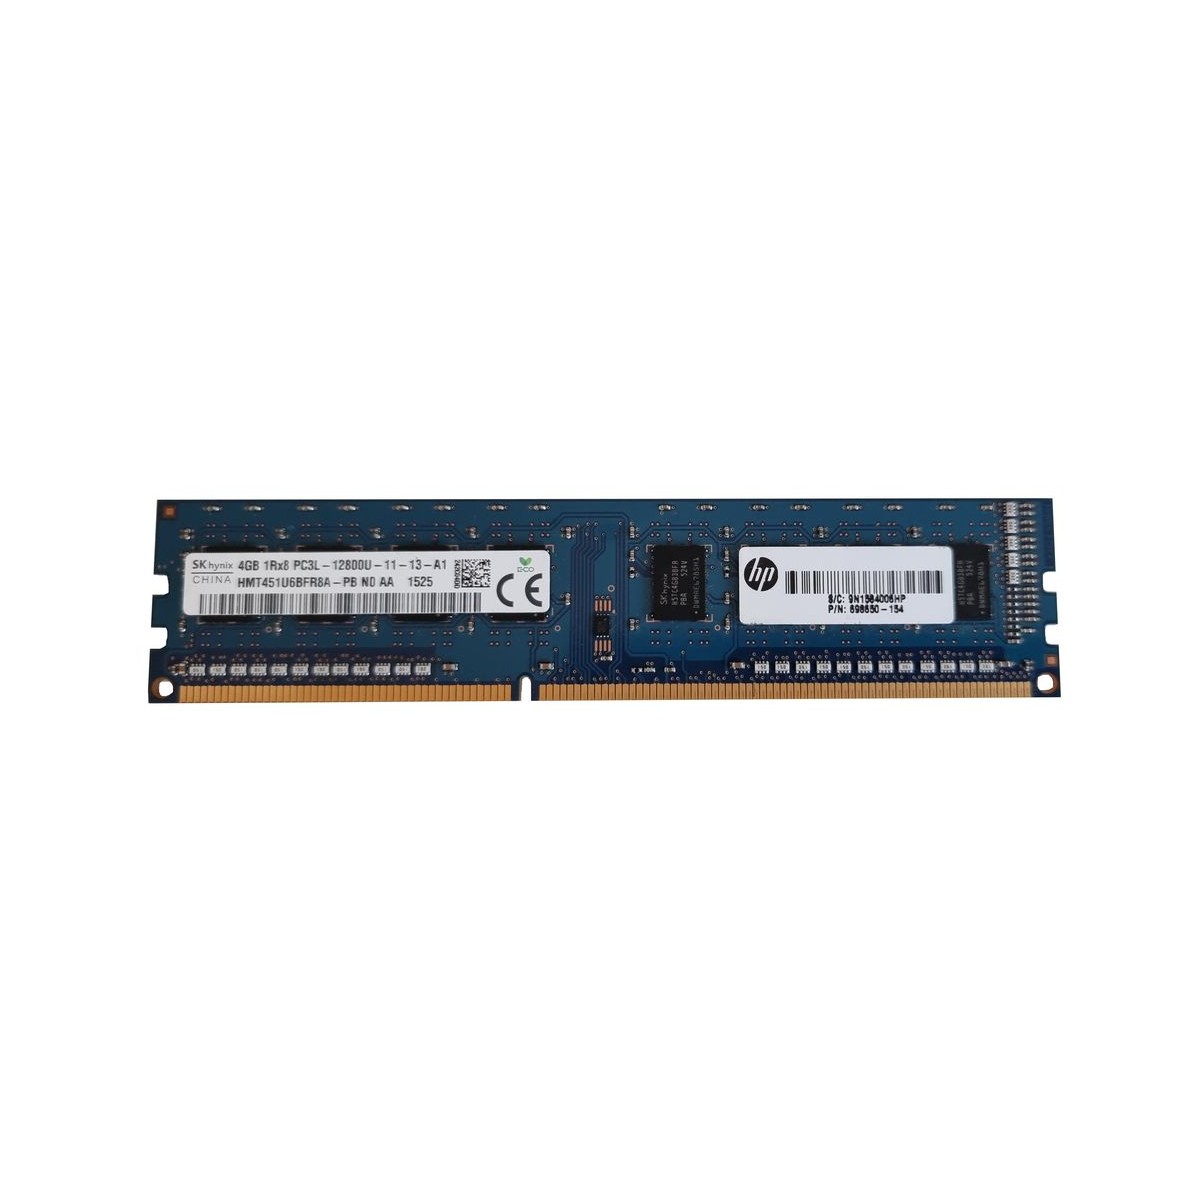 HP HYNIX 4GB DDR3 PC3L-12800U 1600Mhz 698650-154